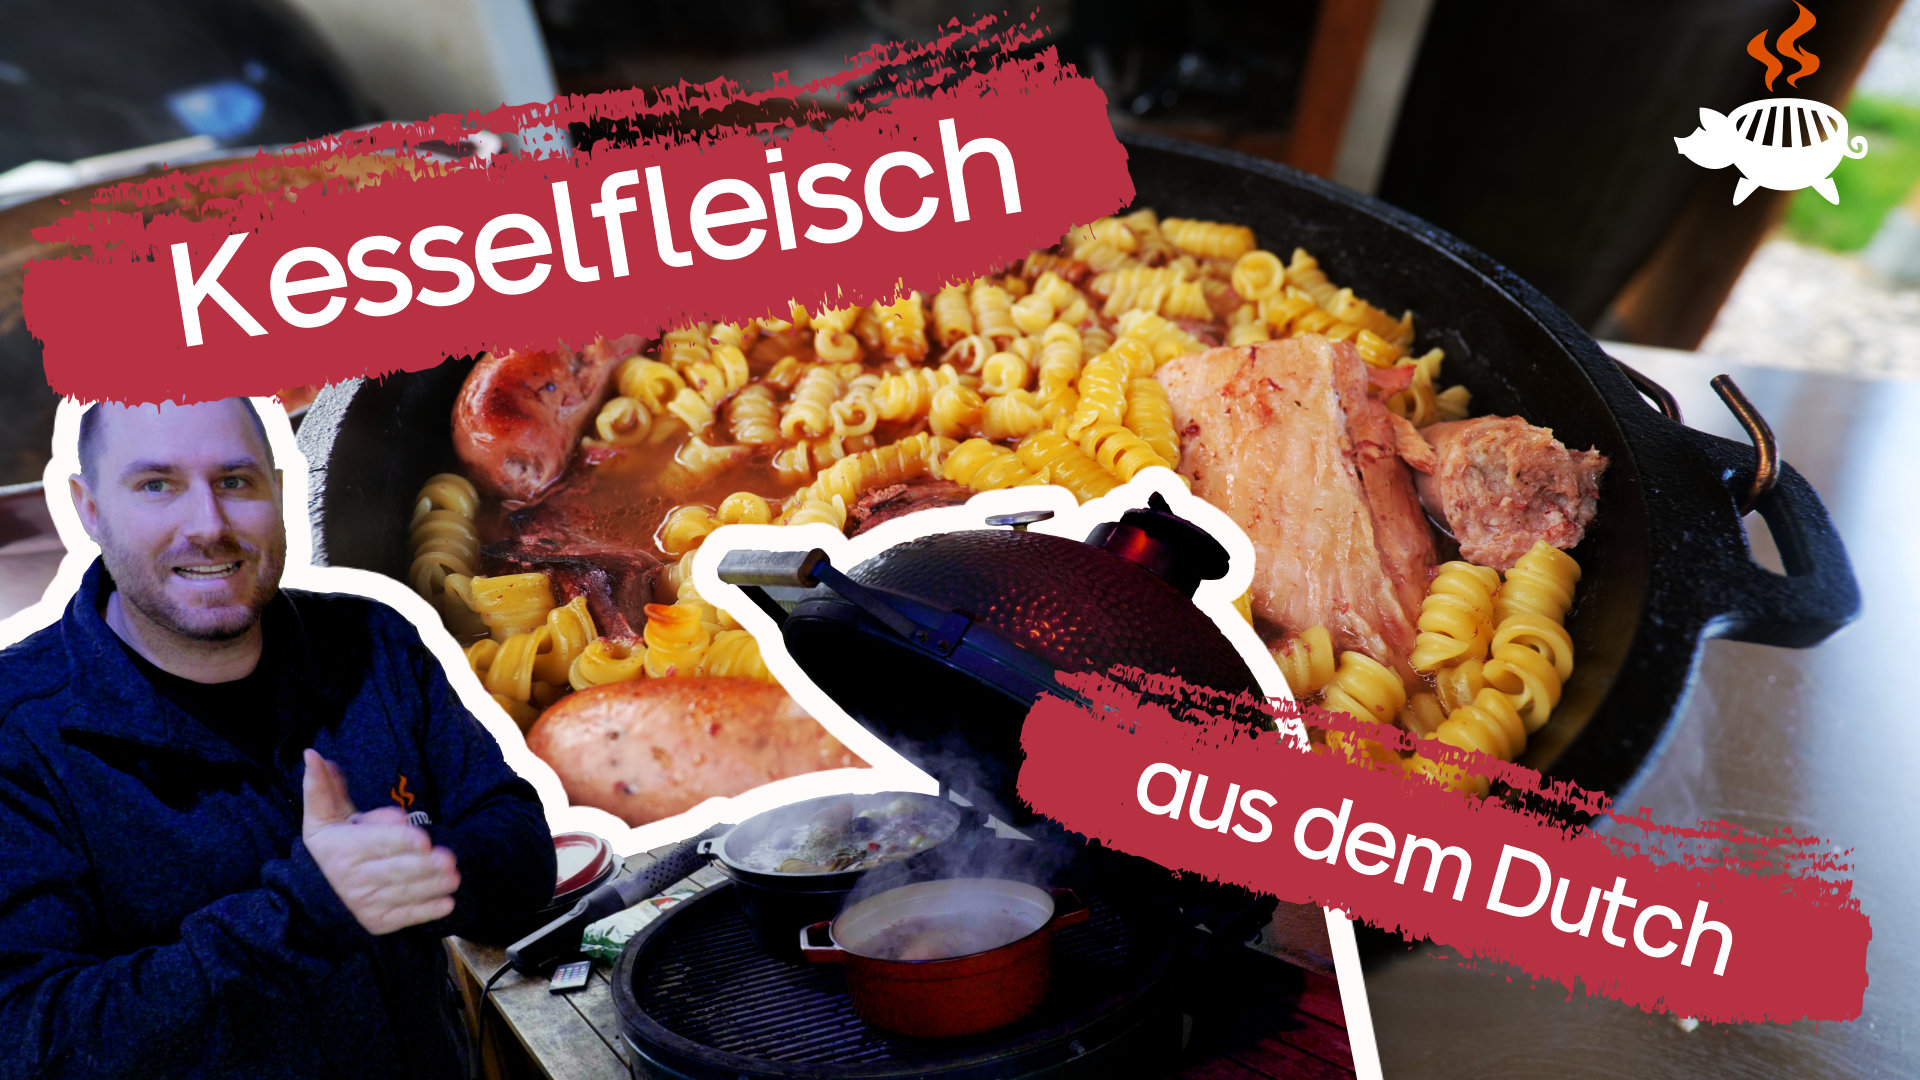 Video-Rezept: Kesselfleisch mit Sauerkraut aus dem Grillschweine Dutch Oven